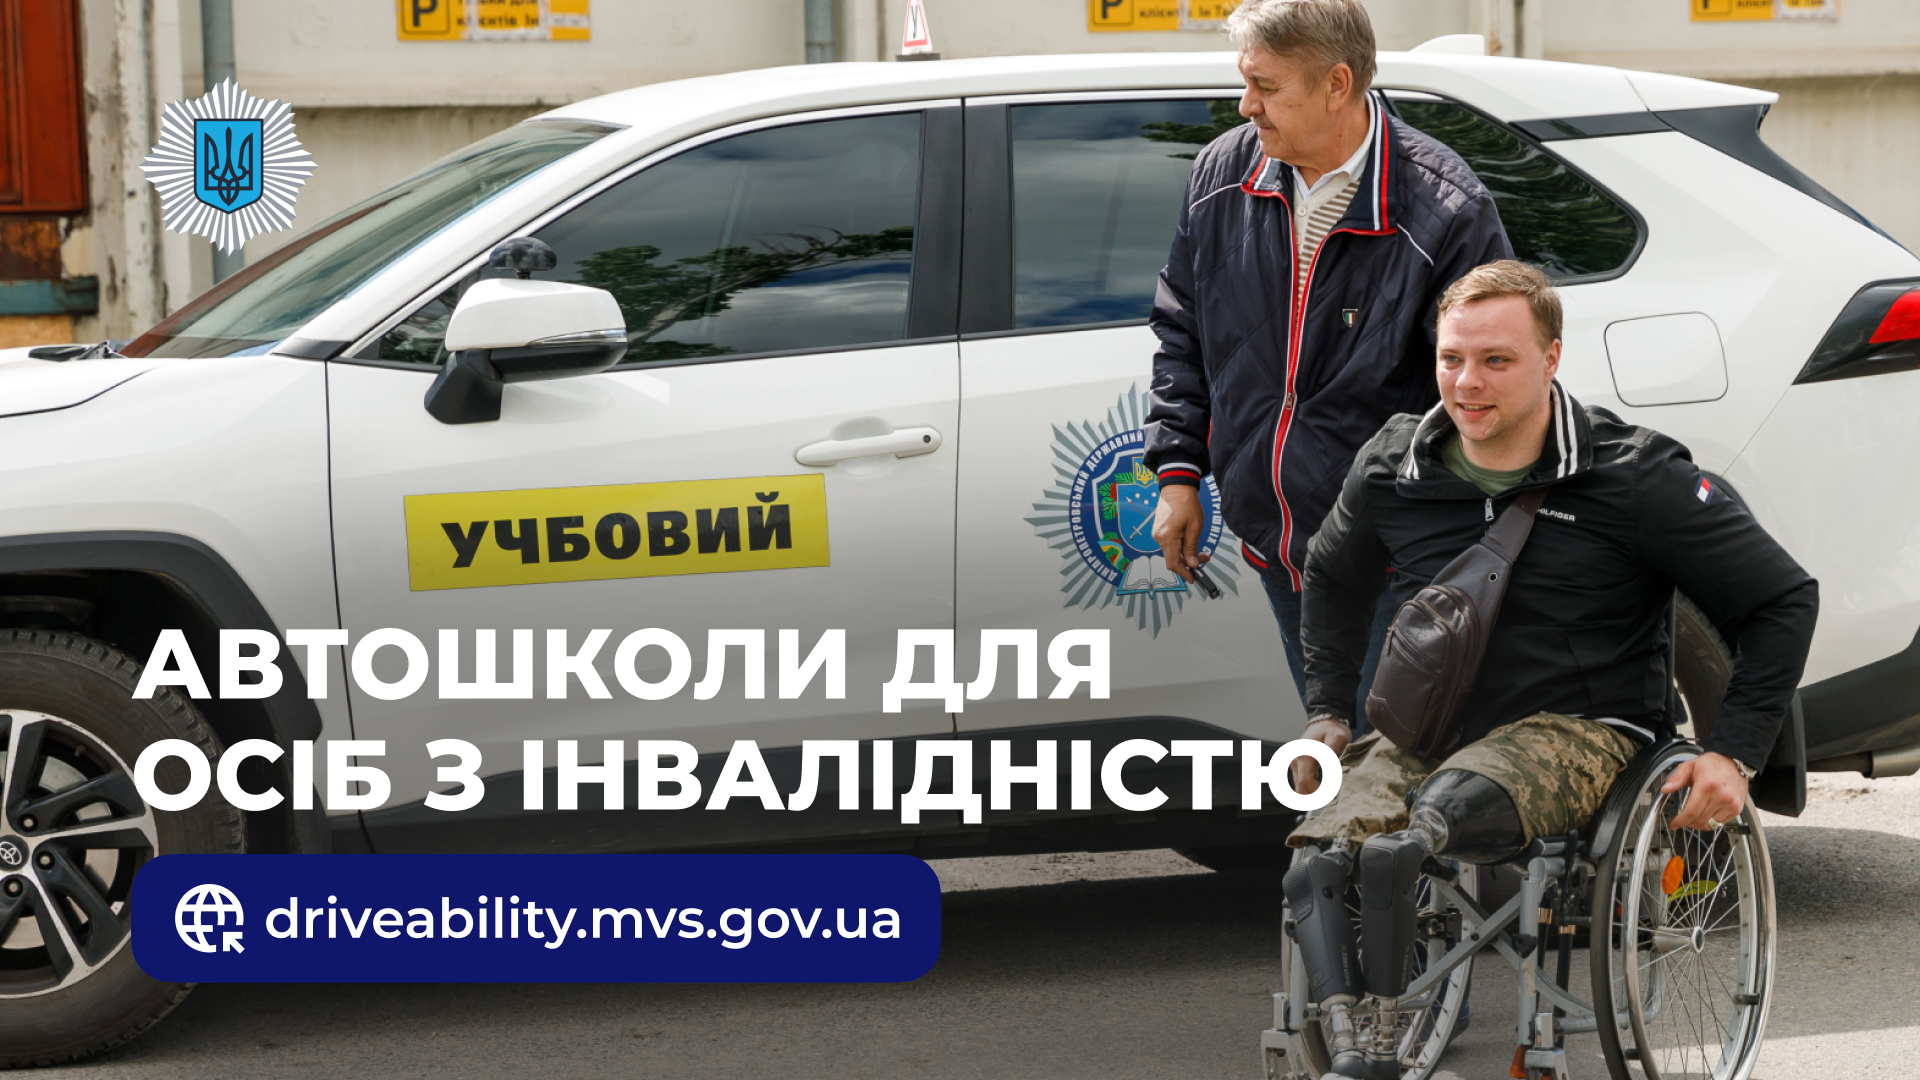 Автошколи для осіб з інвалідністю: де знайти та як розпочати навчання